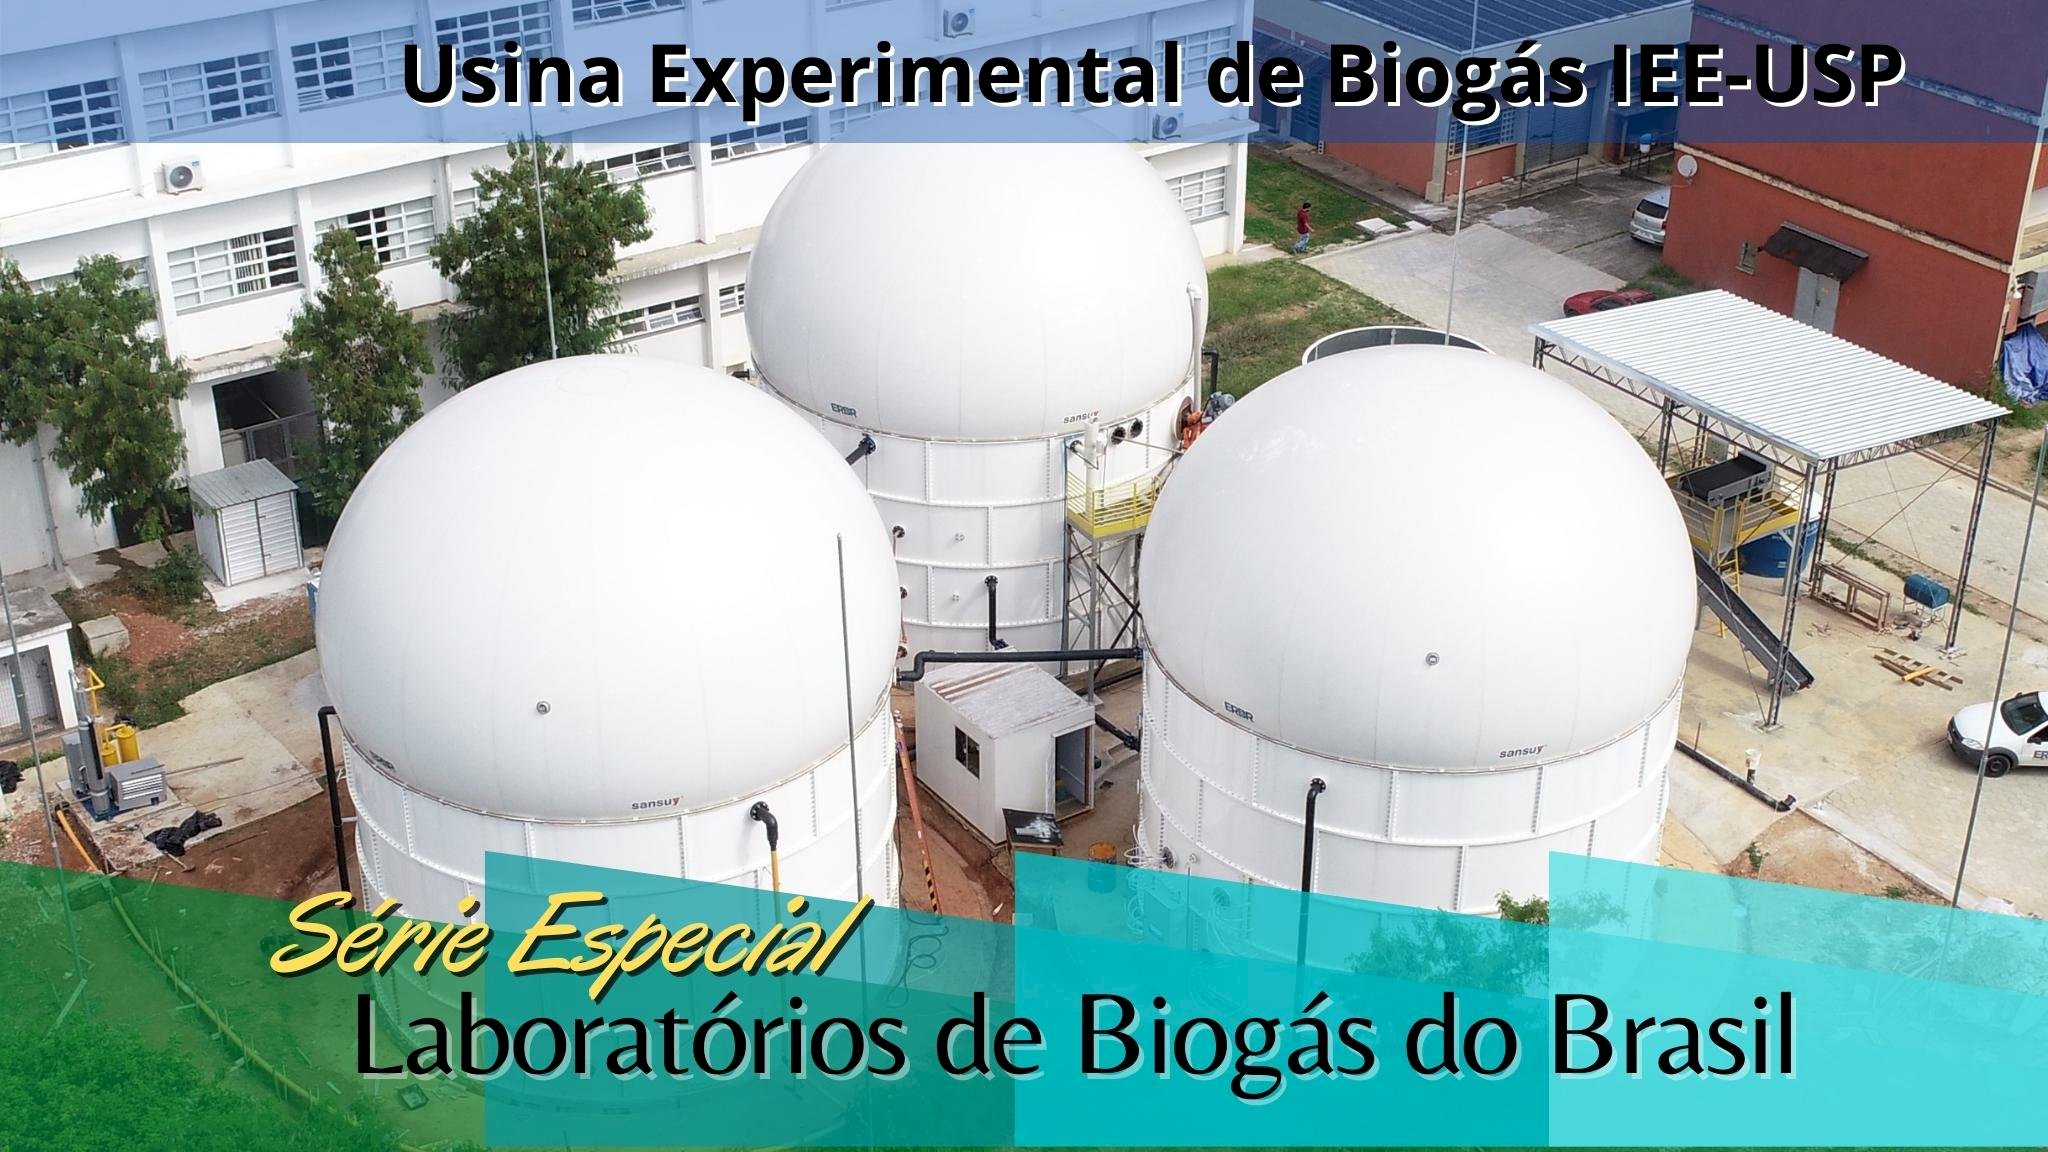 6º Ep - Laboratório de Biogás - IEE USP em São Paulo/SP